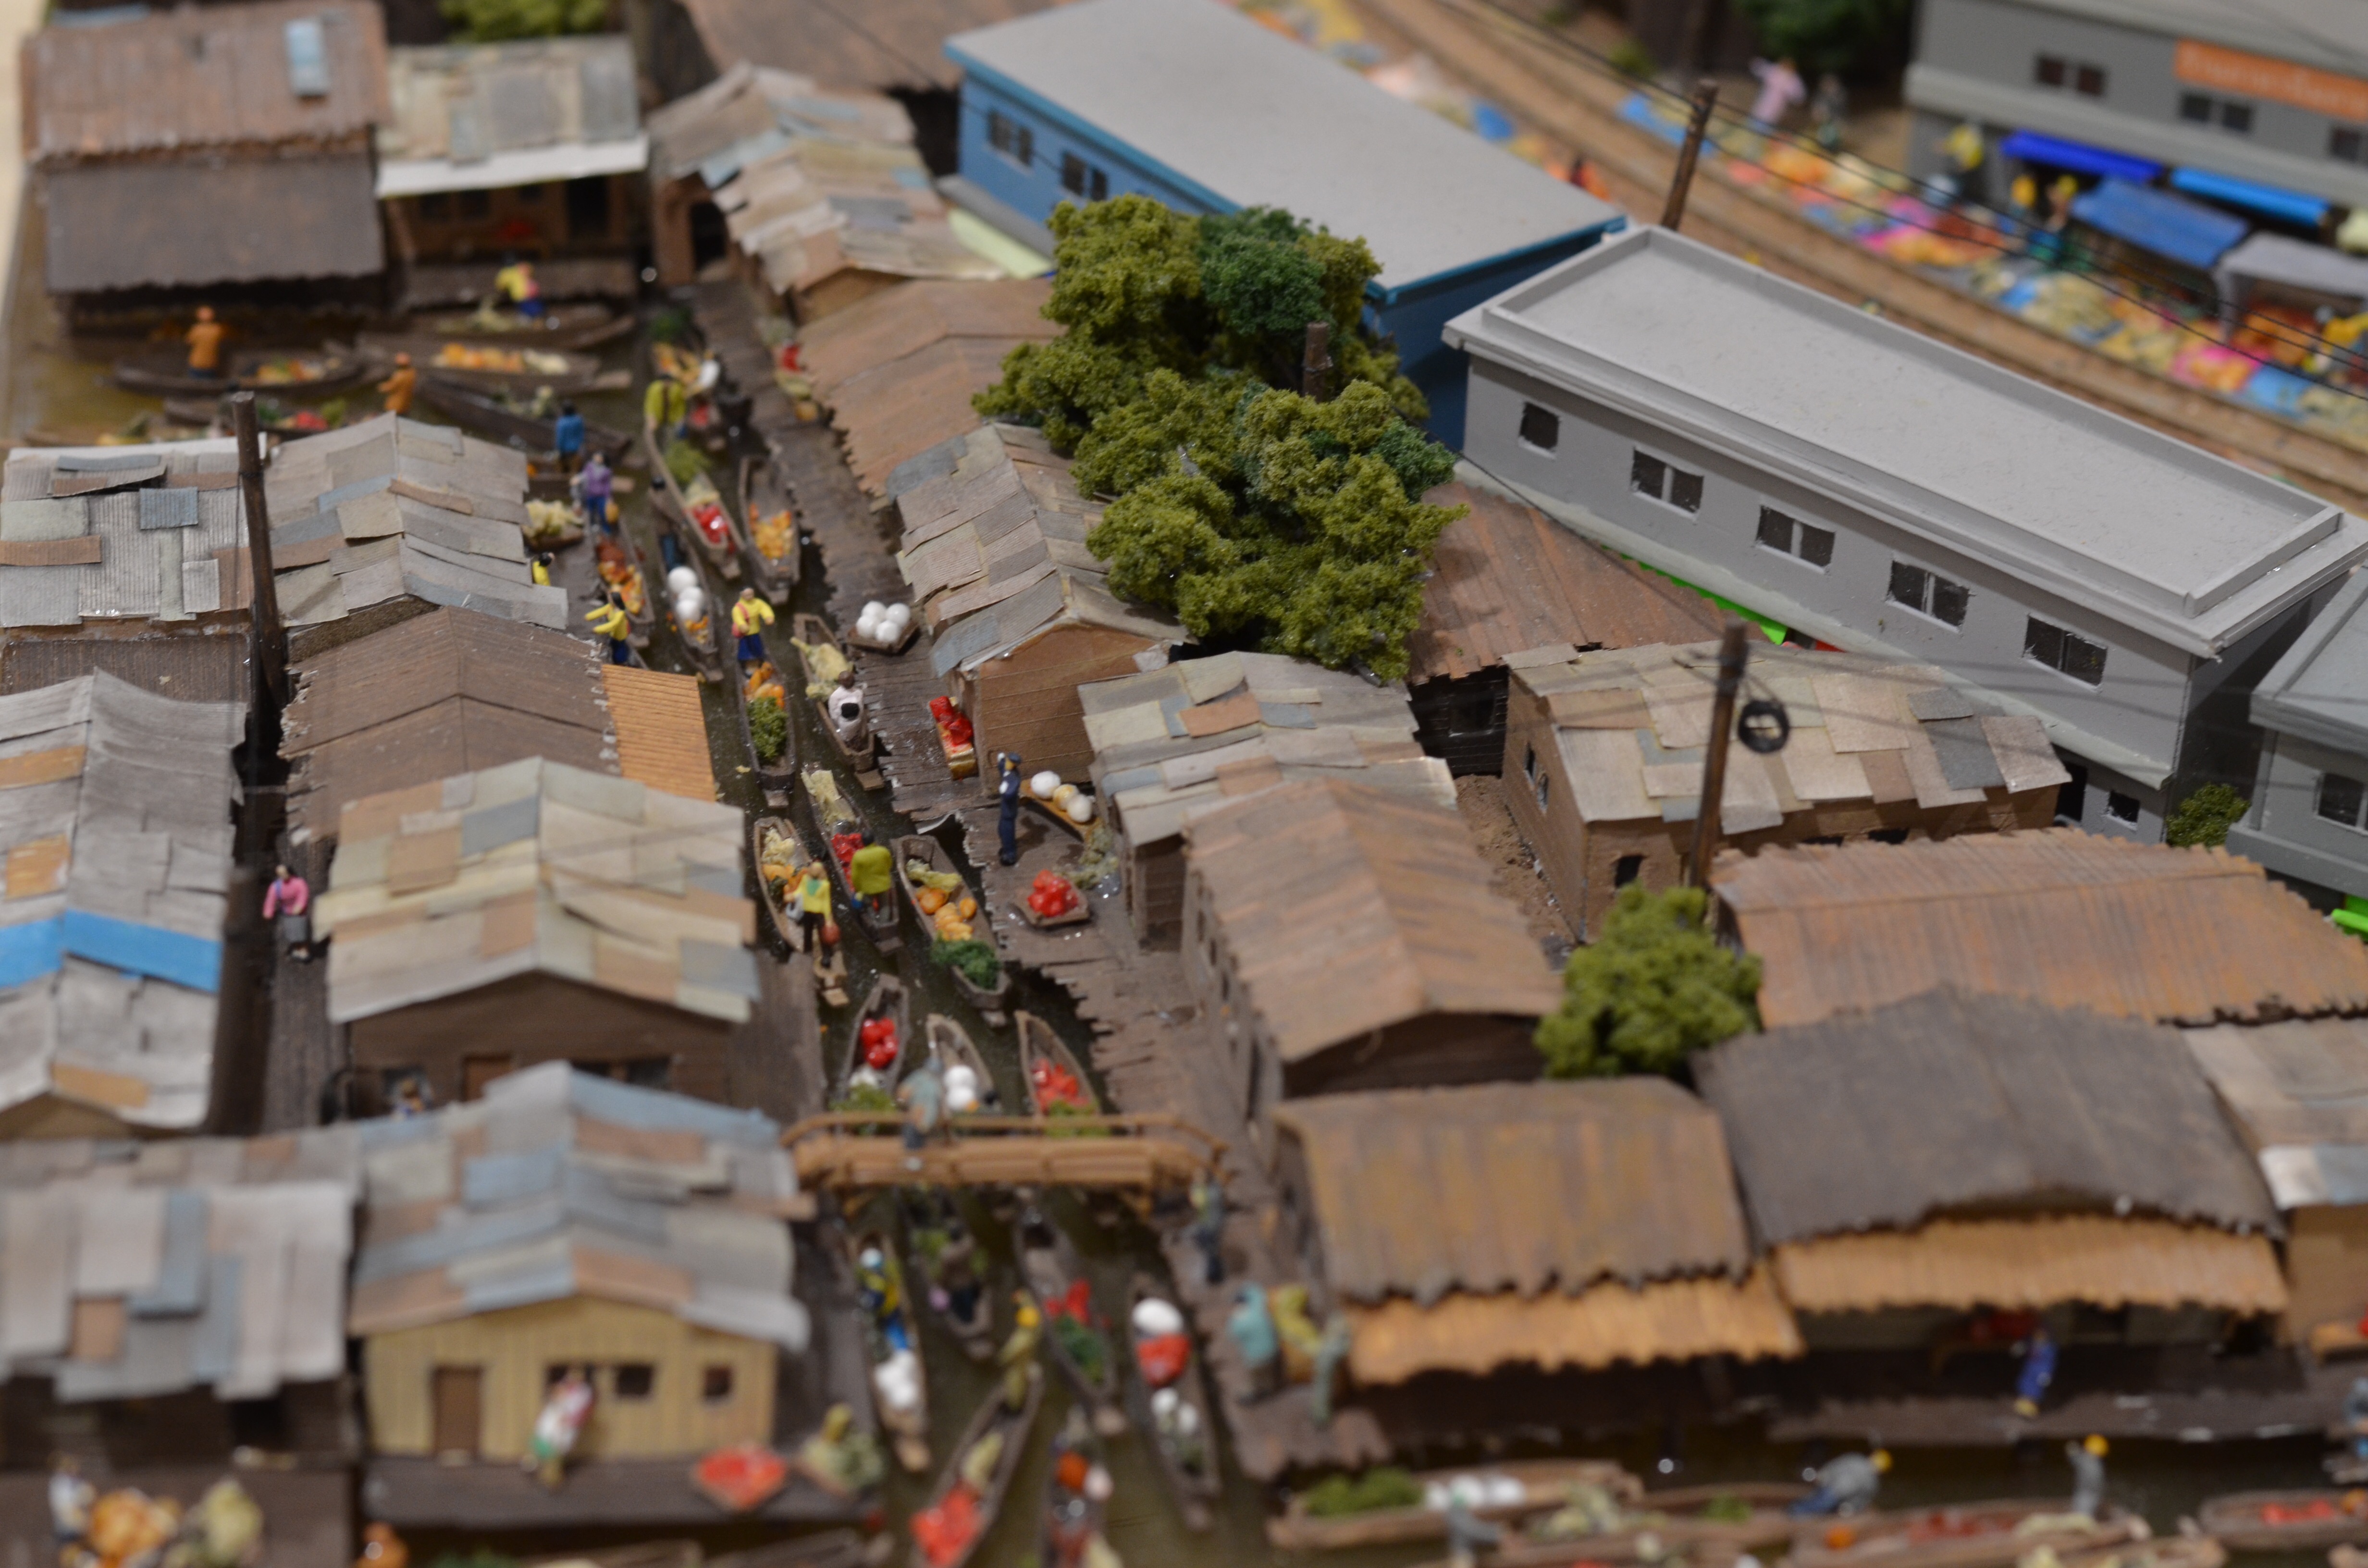 ほかにも全国高等学校鉄道模型コンテスト2015で優秀賞を獲得した灘中学校・高等学校の作品「市場」なども展示されていました。タイのメークロン市場を題材とした緻密なレイアウトです。